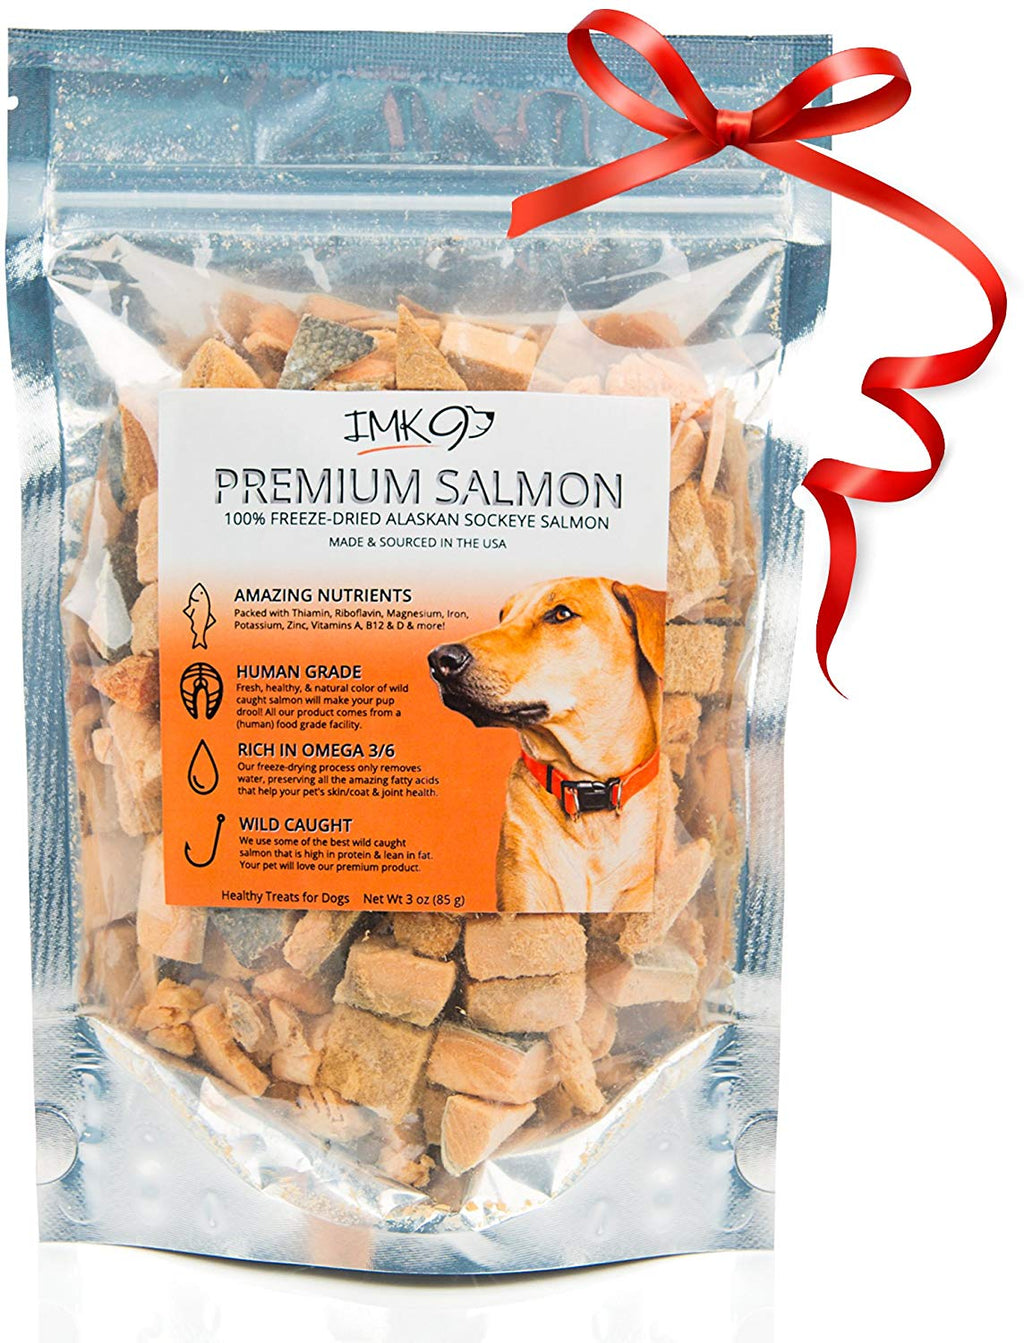 Aceite de salmón para perros 100% natural y puro